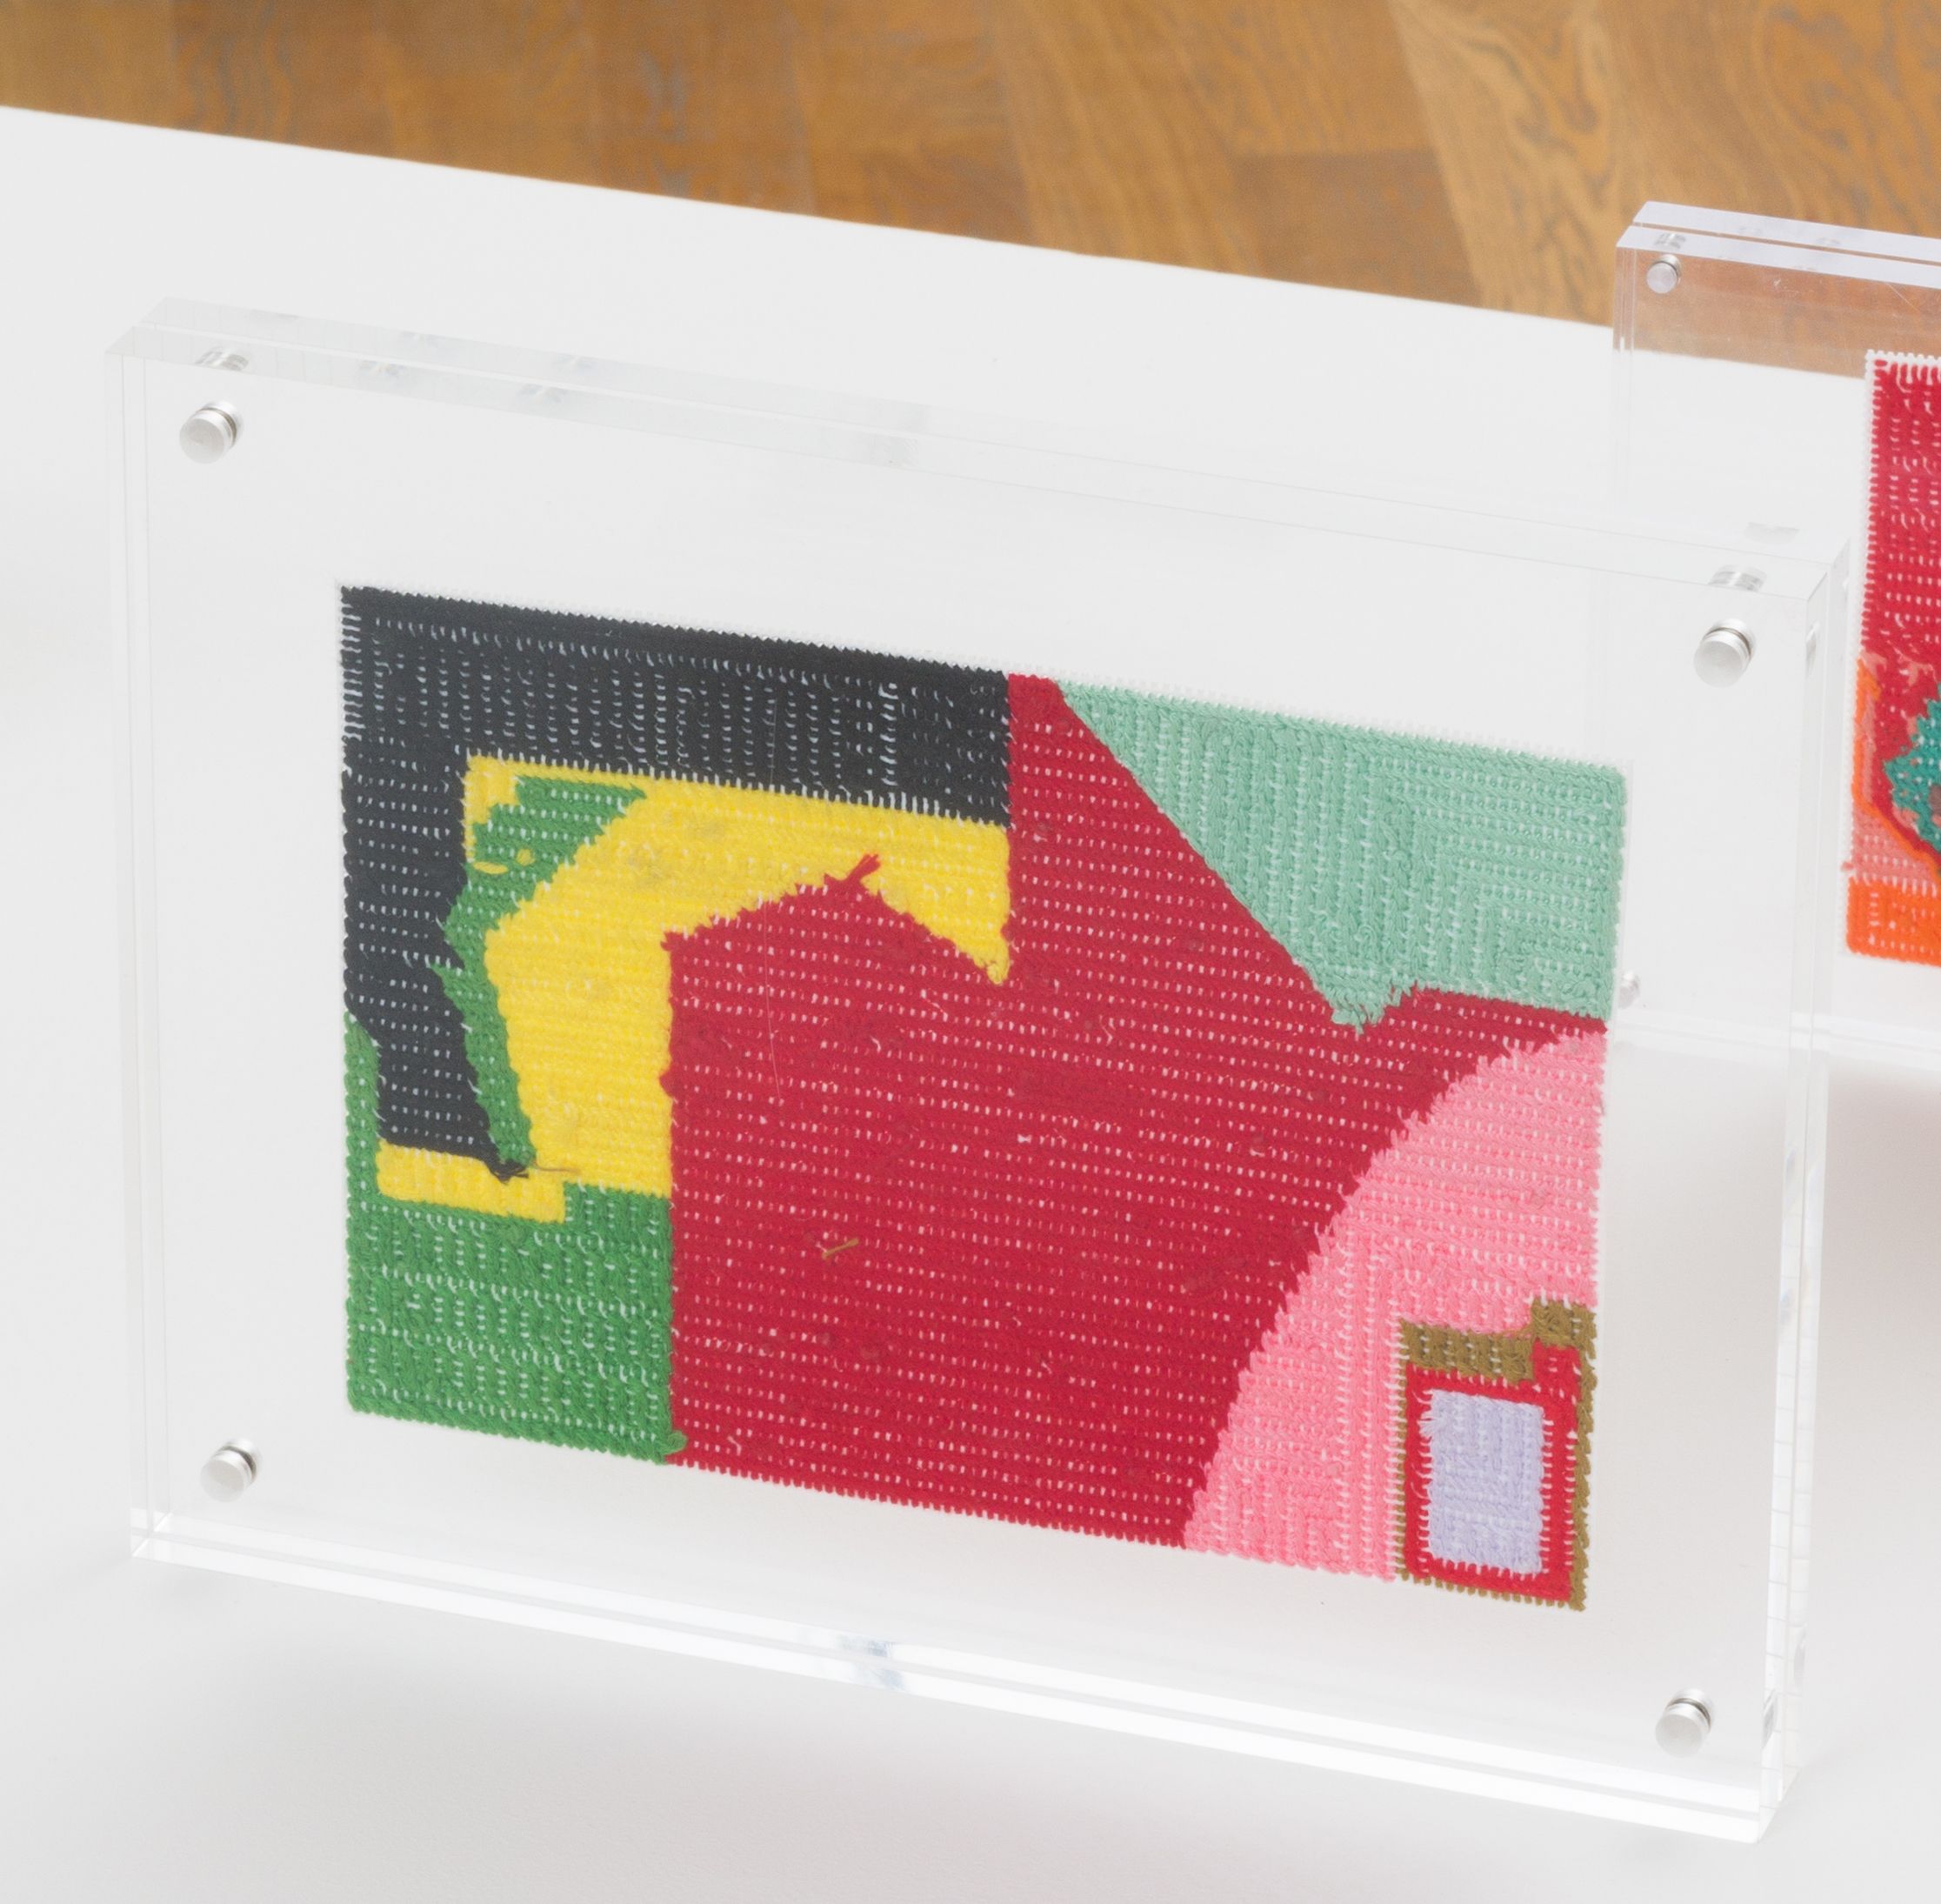 Steve Reinke, Untitled (needlepoint), 2021, floss on plastic backing, 6 x 9 in.